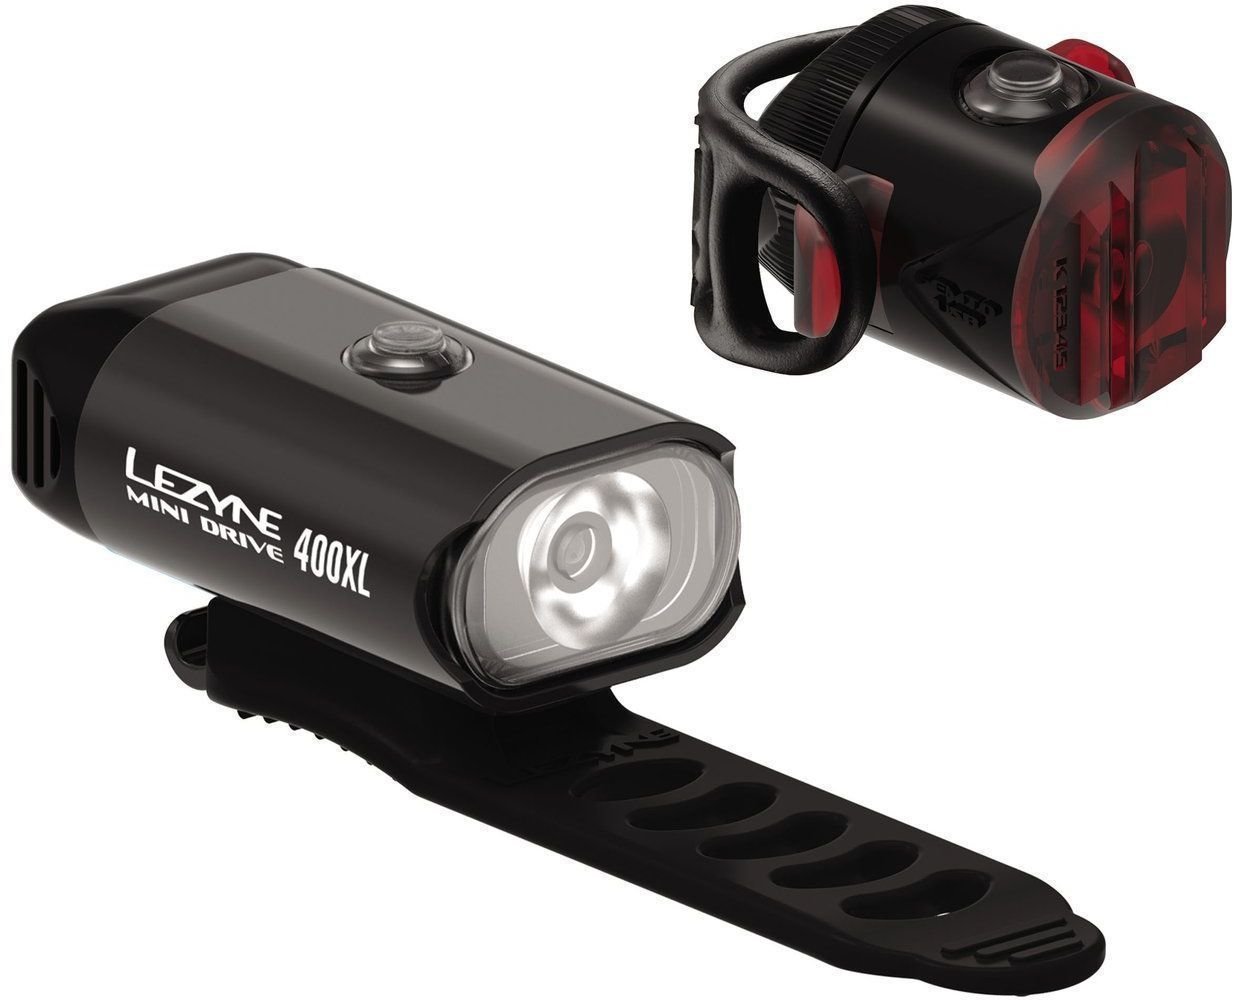 Éclairage de vélo Lezyne Mini Drive 400XL / Femto USB Drive Noir Front 400 lm / Rear 5 lm Éclairage de vélo